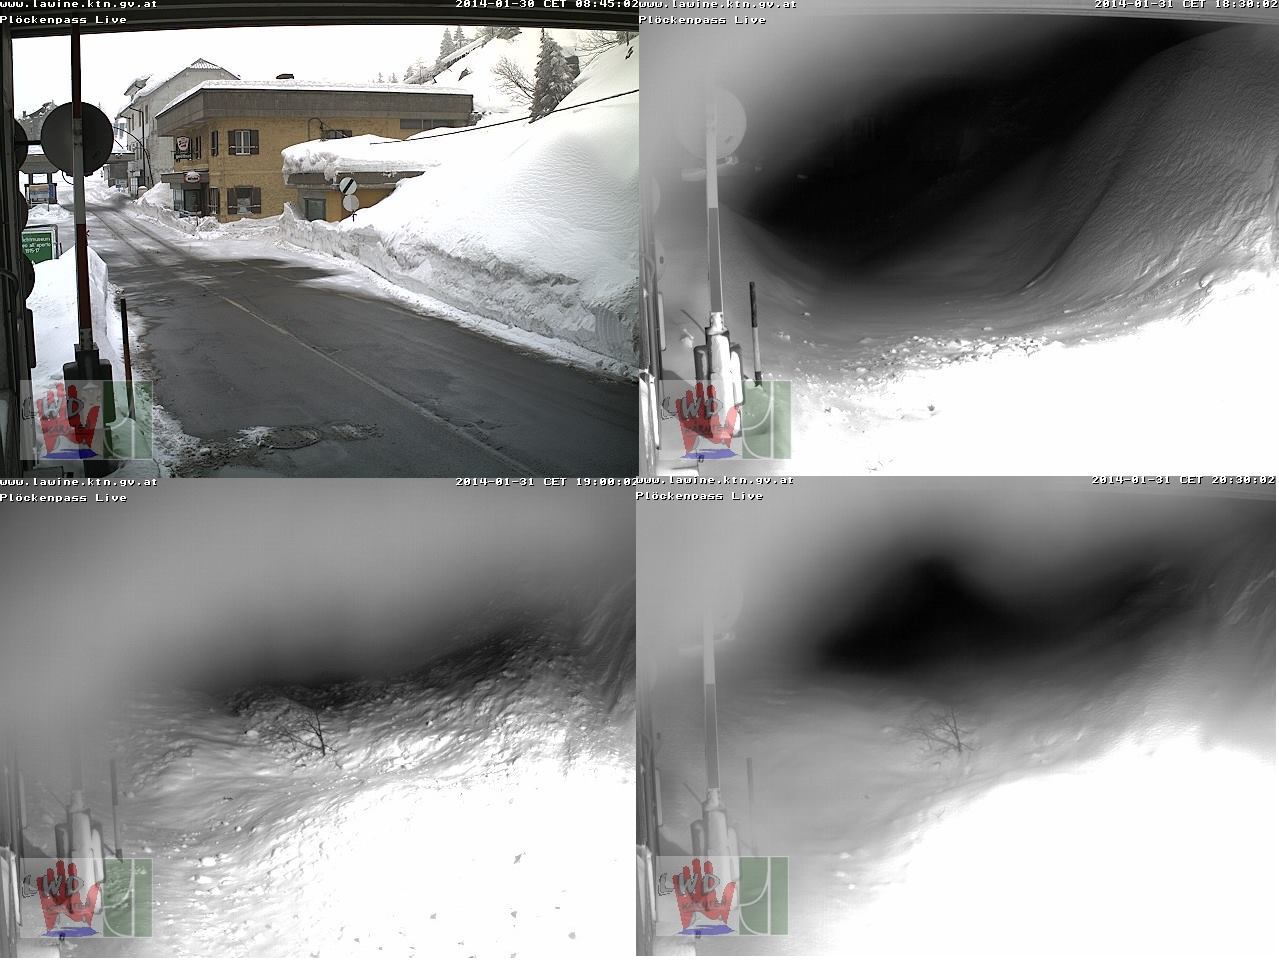 Bal felső kép: tegnap reggel. Jobb felső kép: a lavina előtt. Bal alsó kép: a lavina után. Jobb alsó kép: ma este.